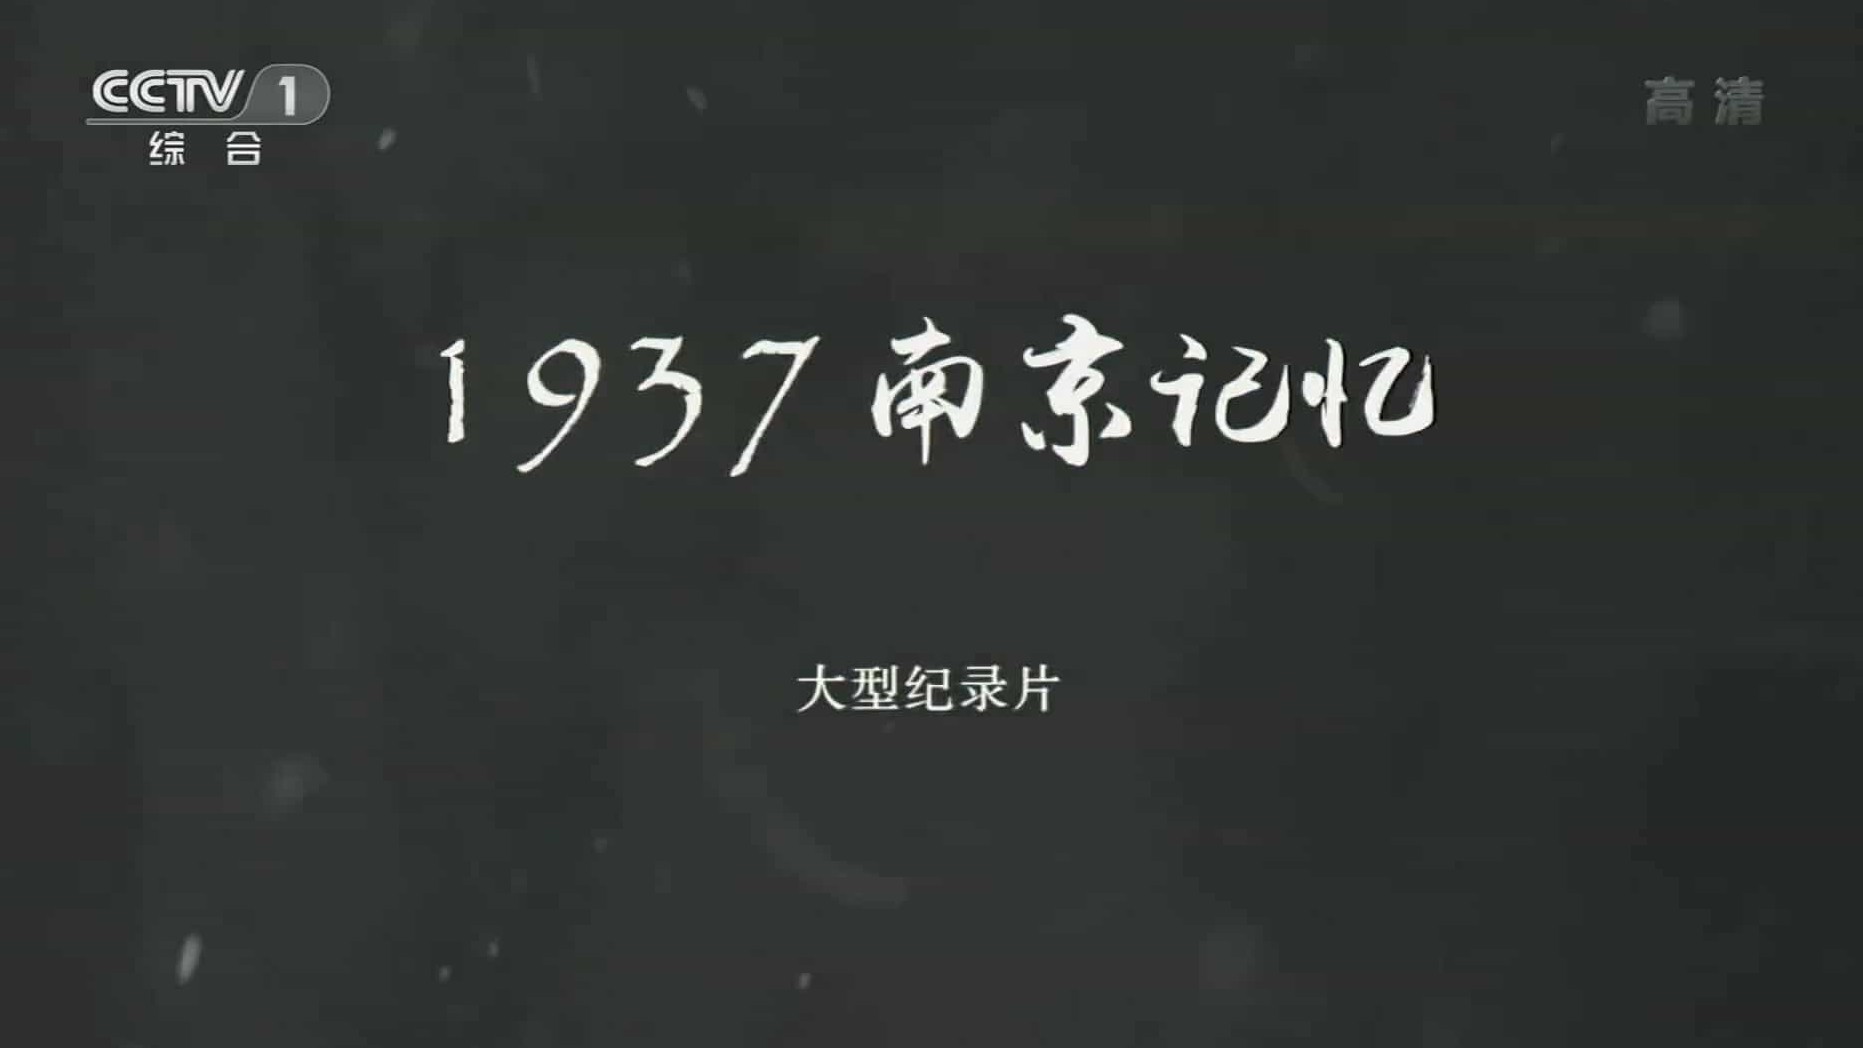 央视纪录片《1937·南京记忆 2014》汉语中字 1080P